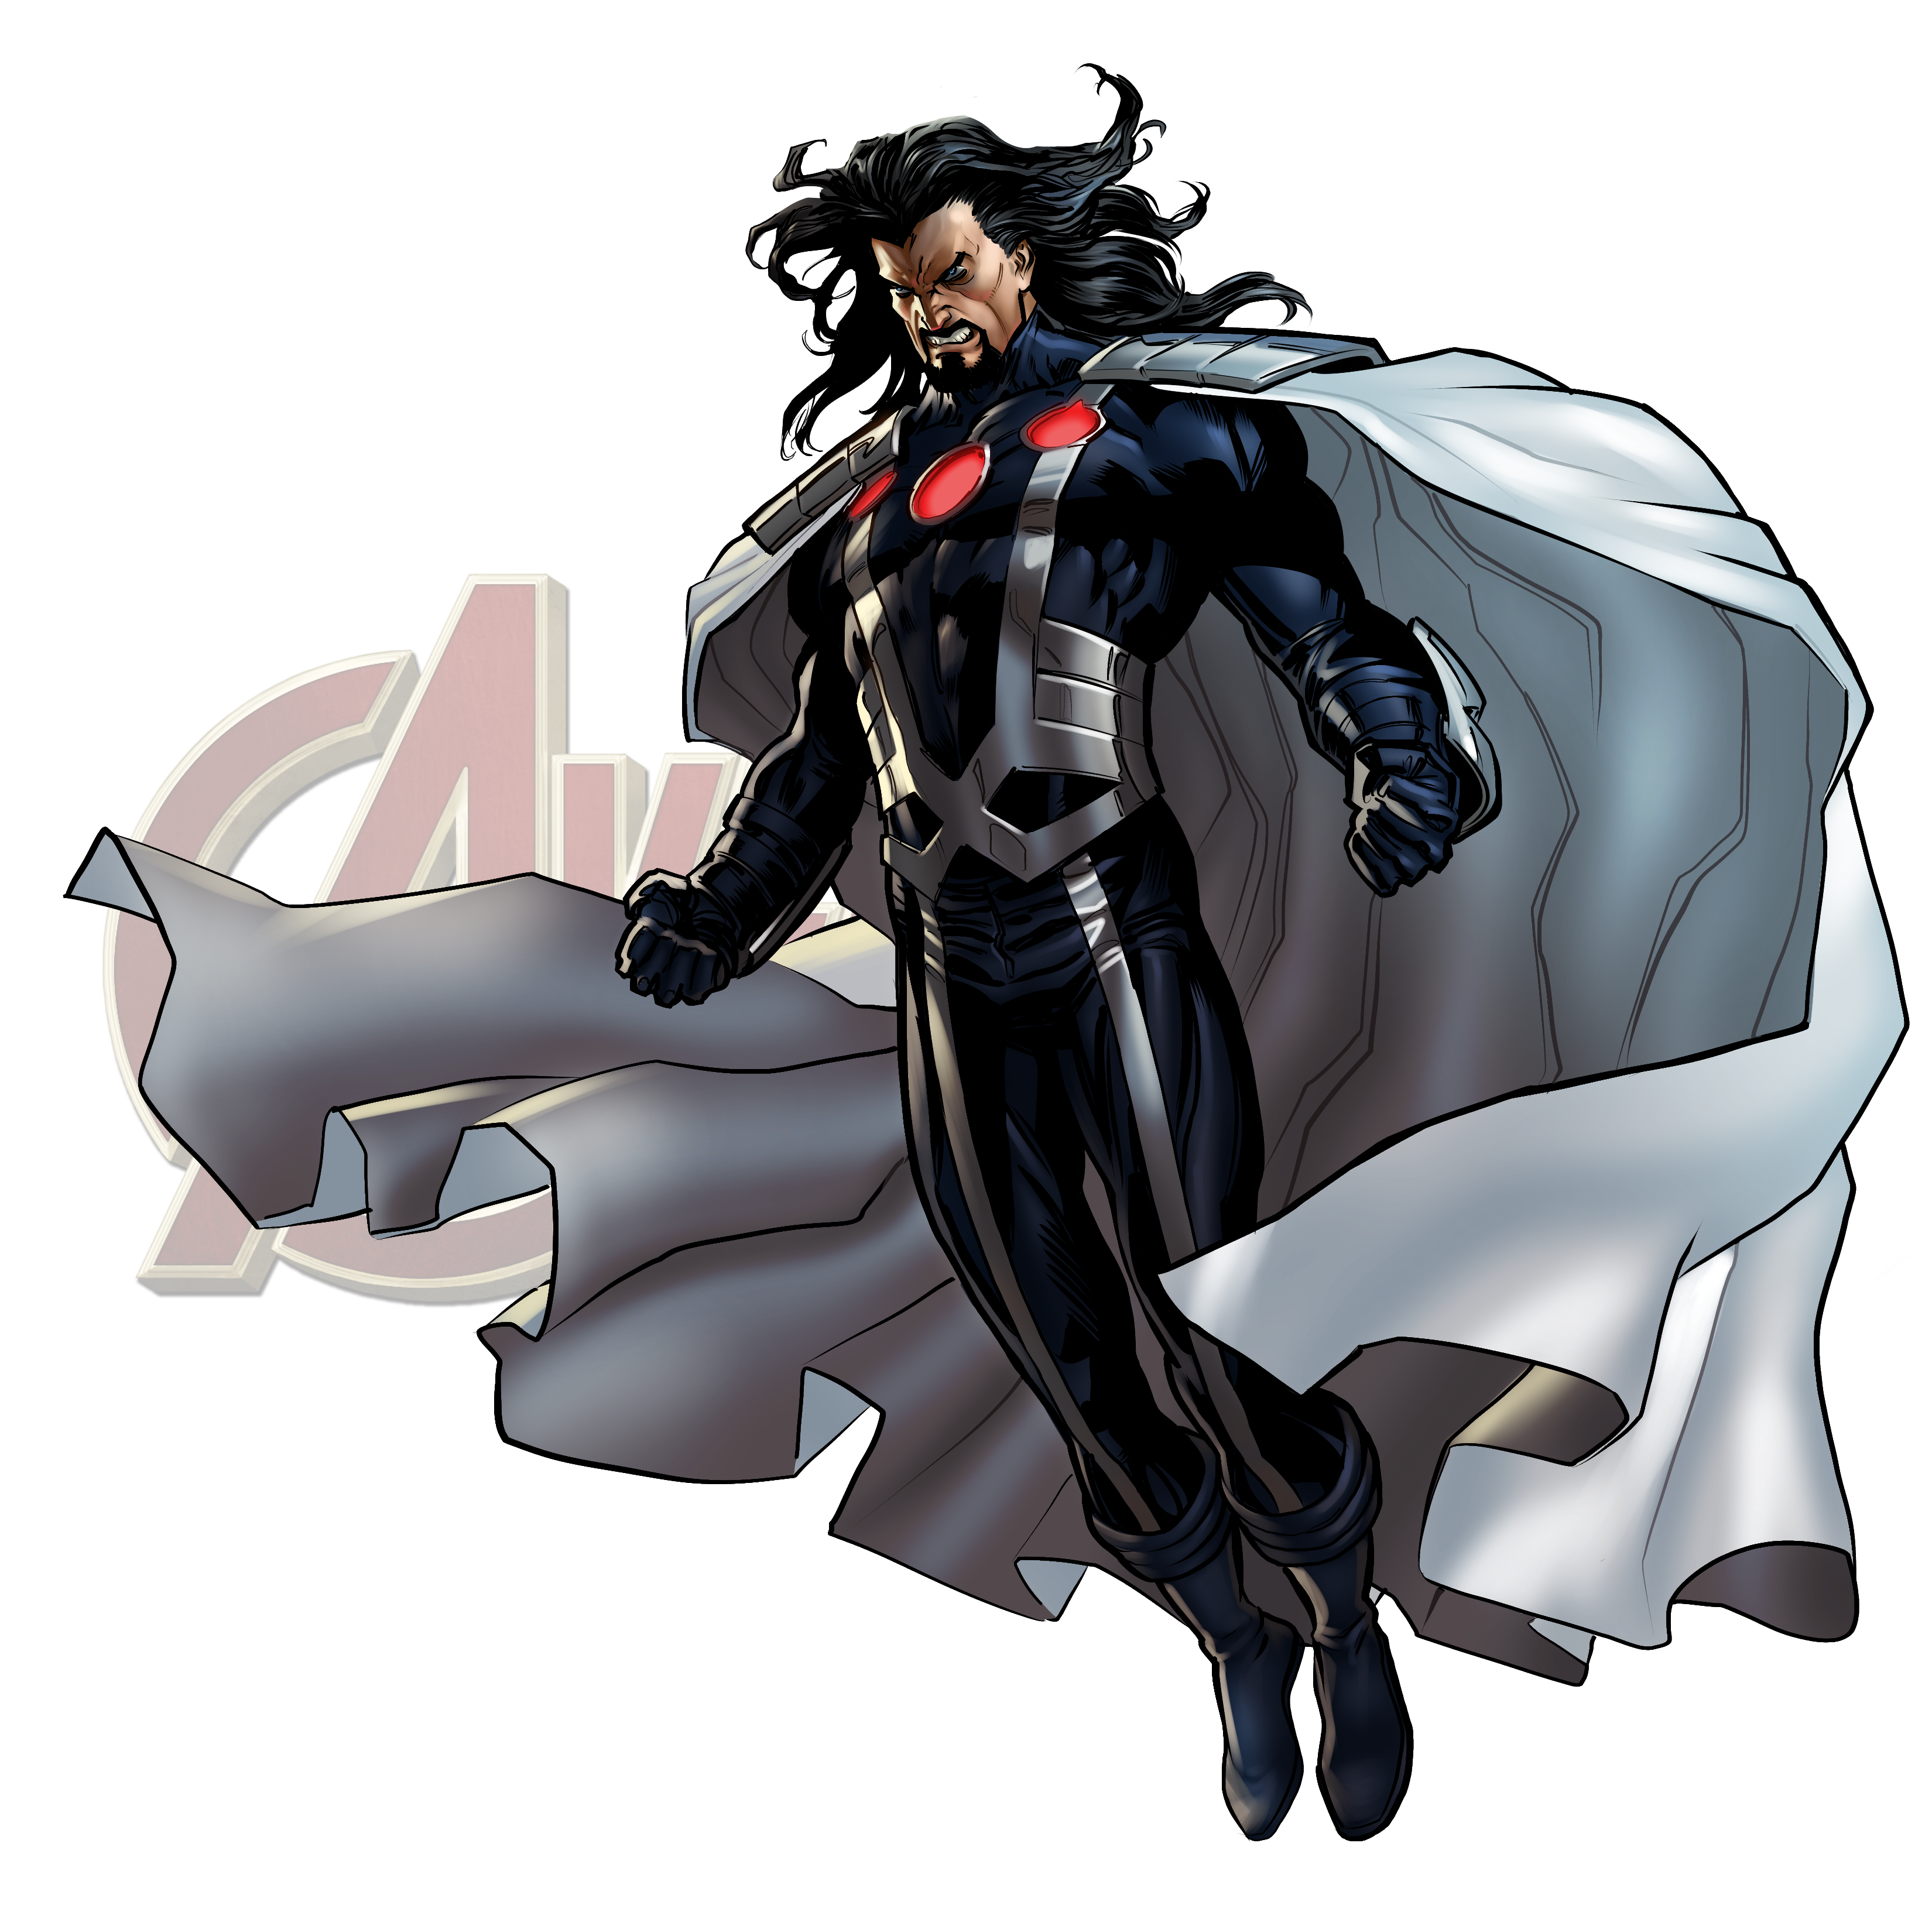 Marvel: Avengers Alliance #16